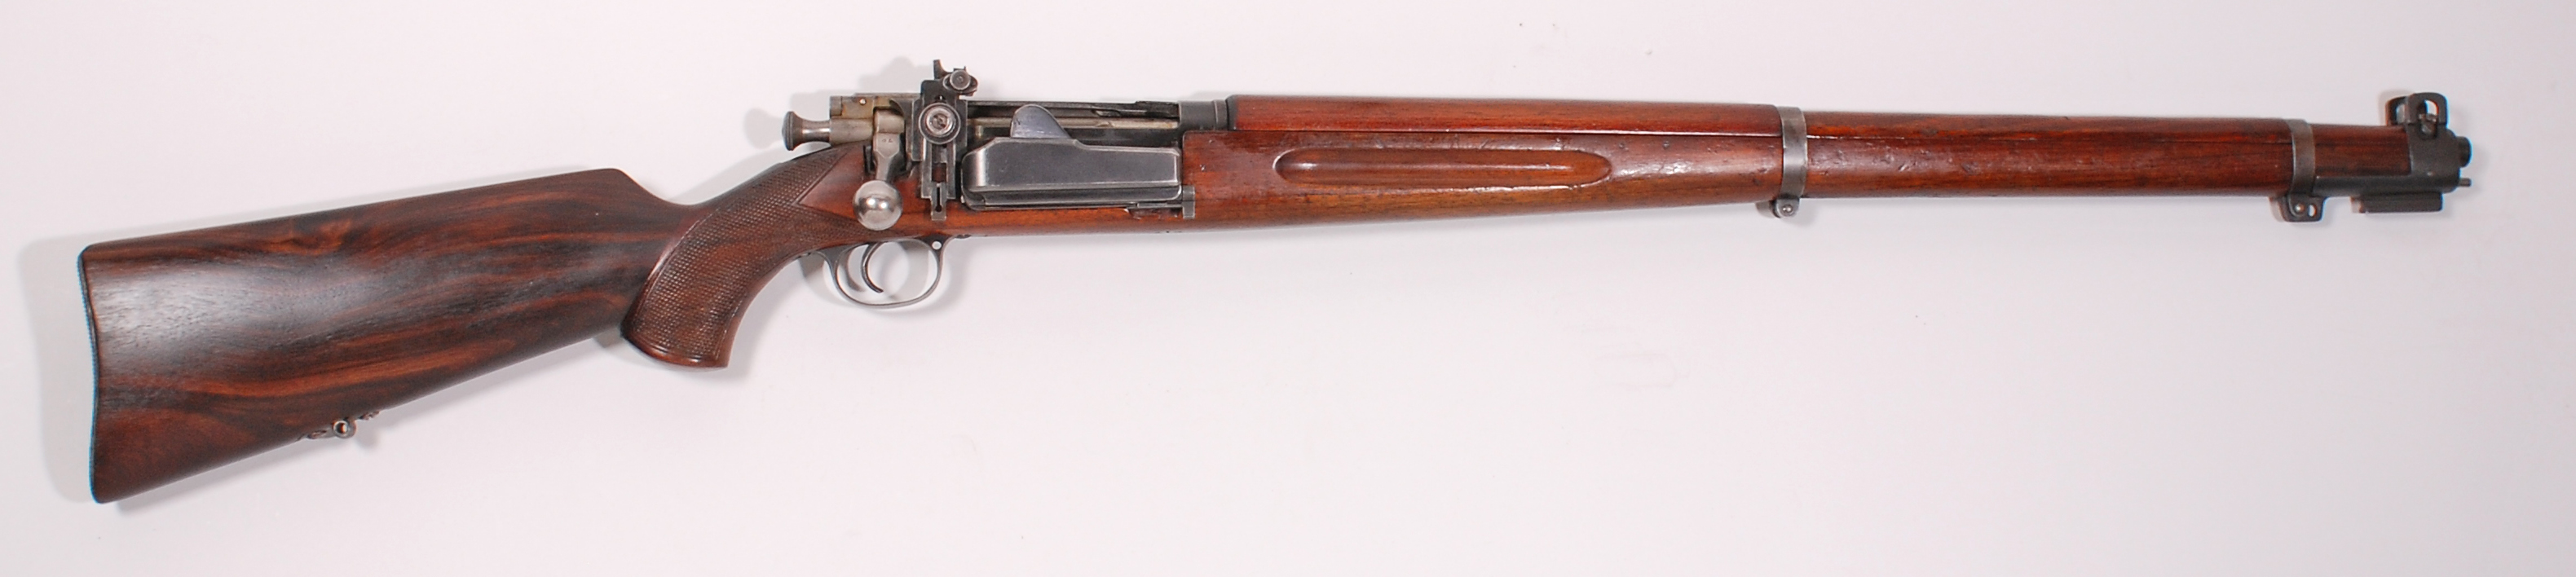 ./guns/rifle/bilder/Rifle-Kongsberg-Krag-M1923-79-1.jpg